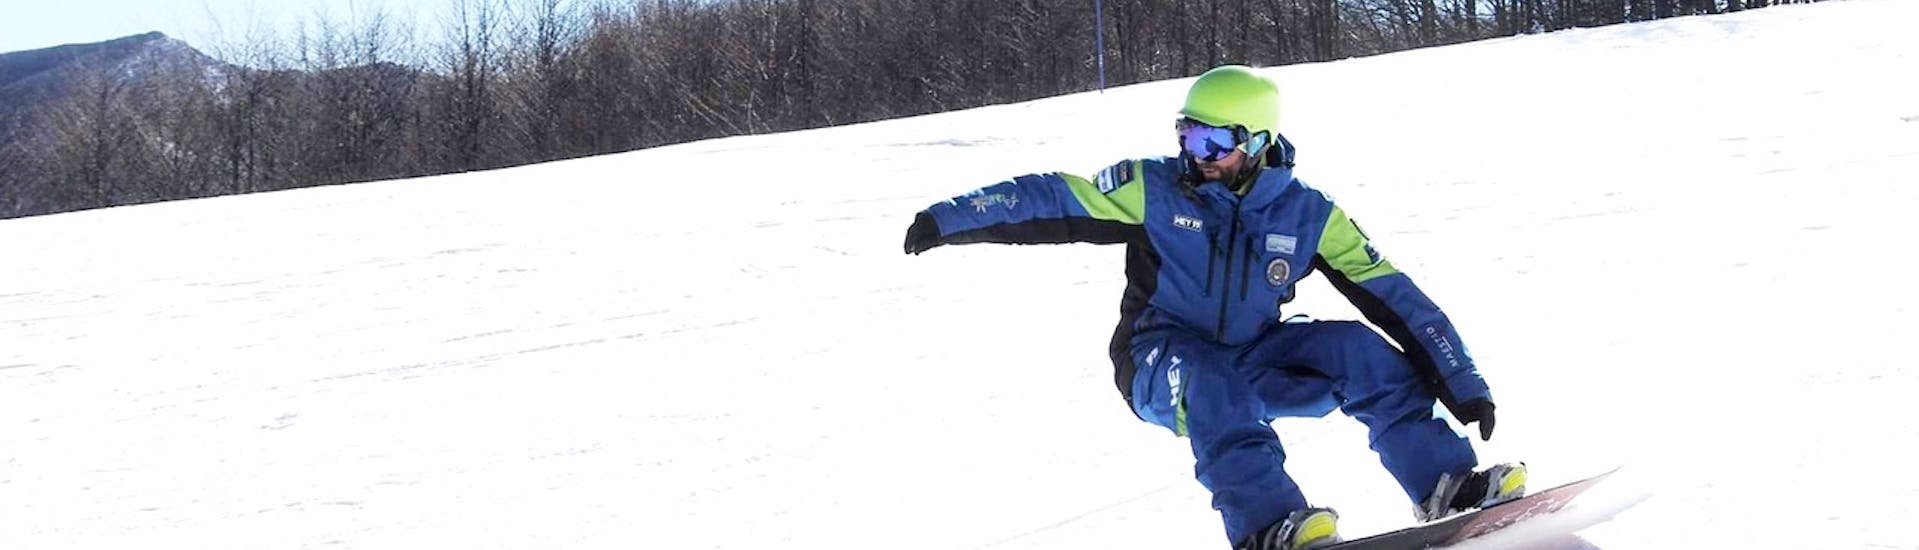 Un rider in pista durante le Lezioni private di snowboard per tutte le età e i livelli con Scuola Sci Freeski Roccaraso.